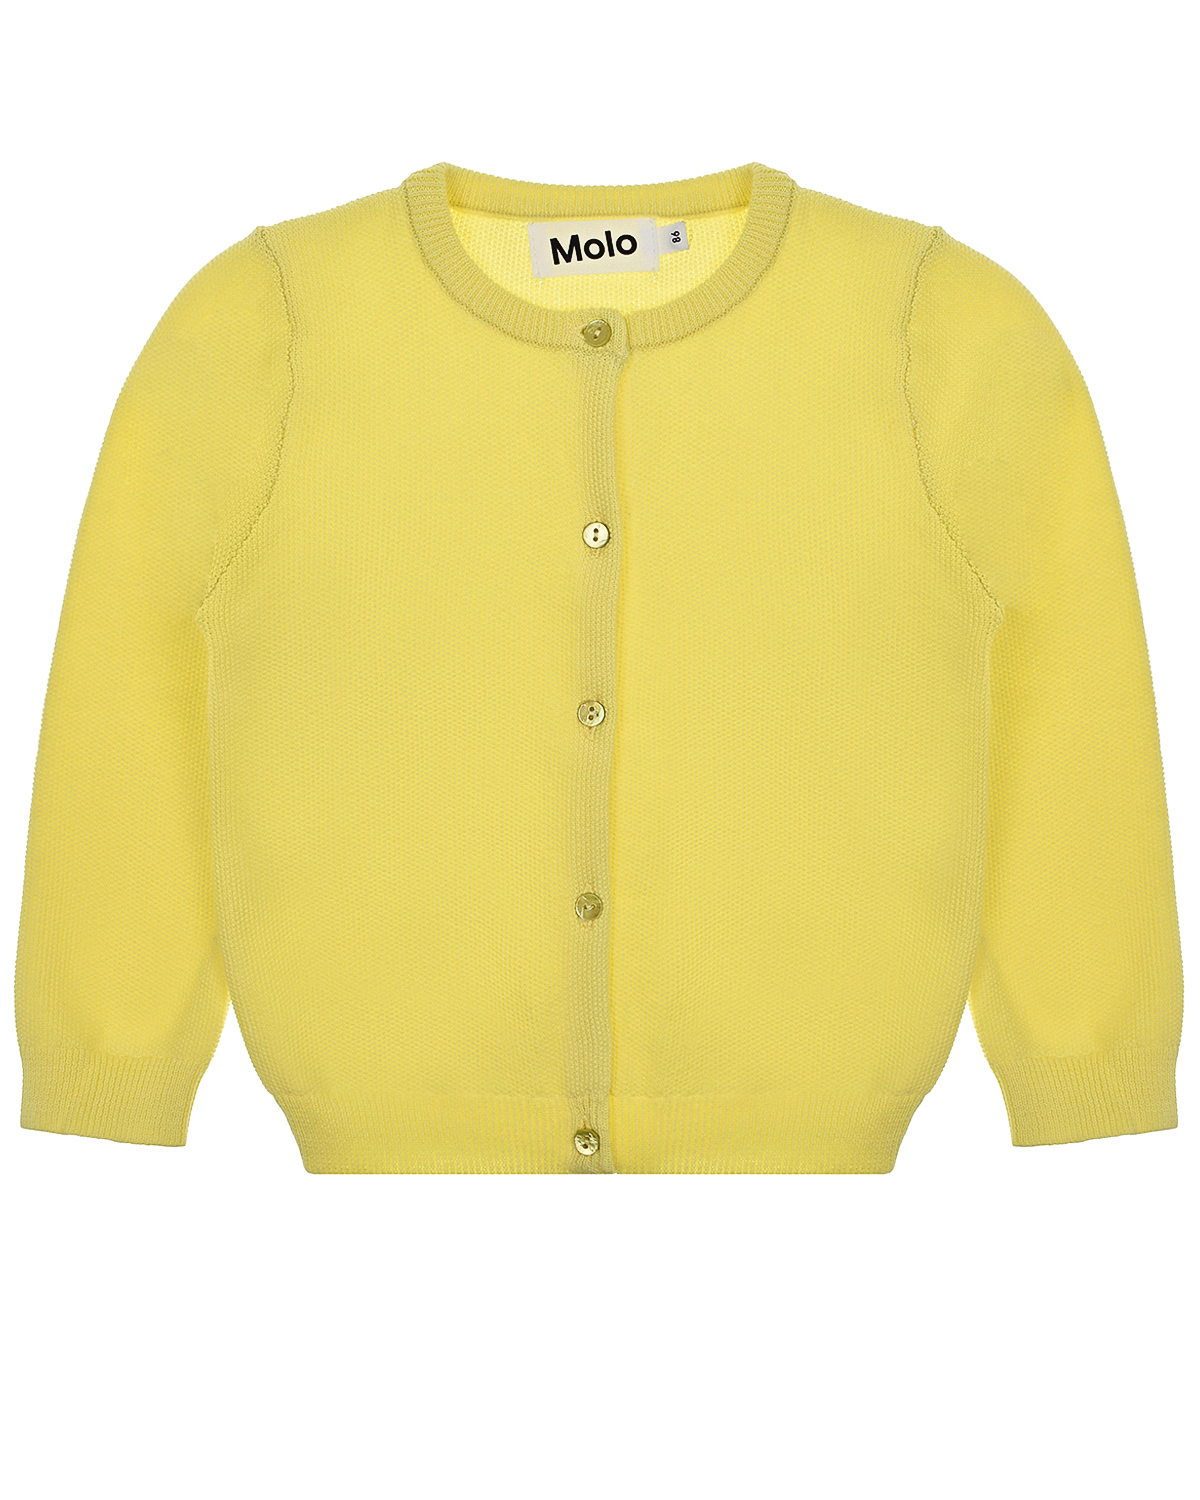 Кардиган Ginny Pale Lemon Molo детский, размер 68, цвет желтый - фото 1